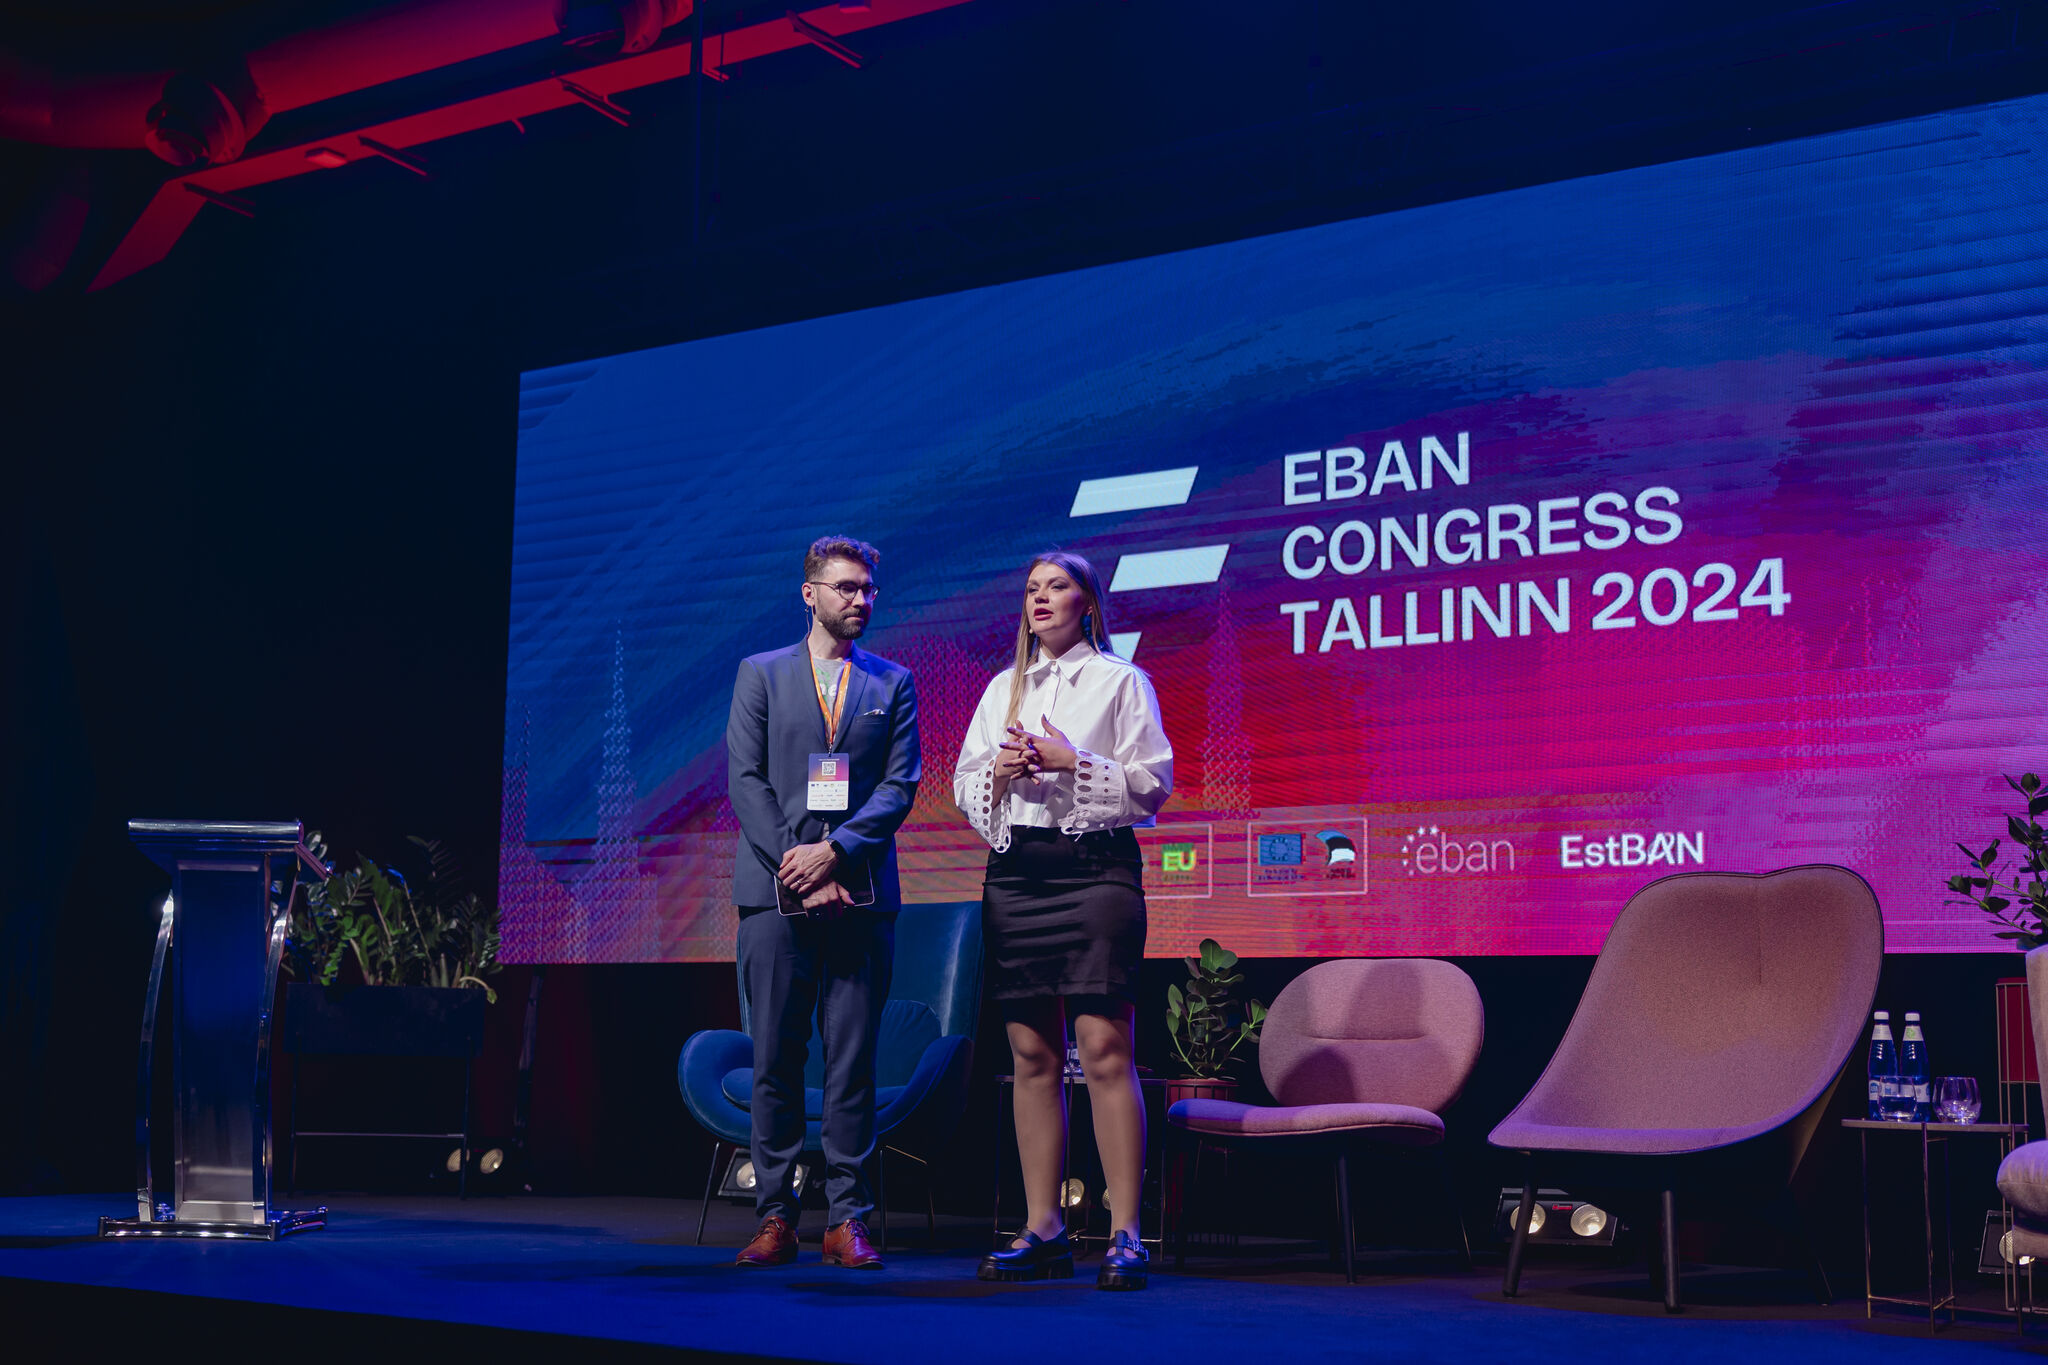 Eesti Äriinglite võrgustik (EstBAN) korraldas koos Euroopa Äriinglite võrgustikuga (EBAN) rahvusvahelise investorite, asutajate ja startup-entusiastite jaoks mõ